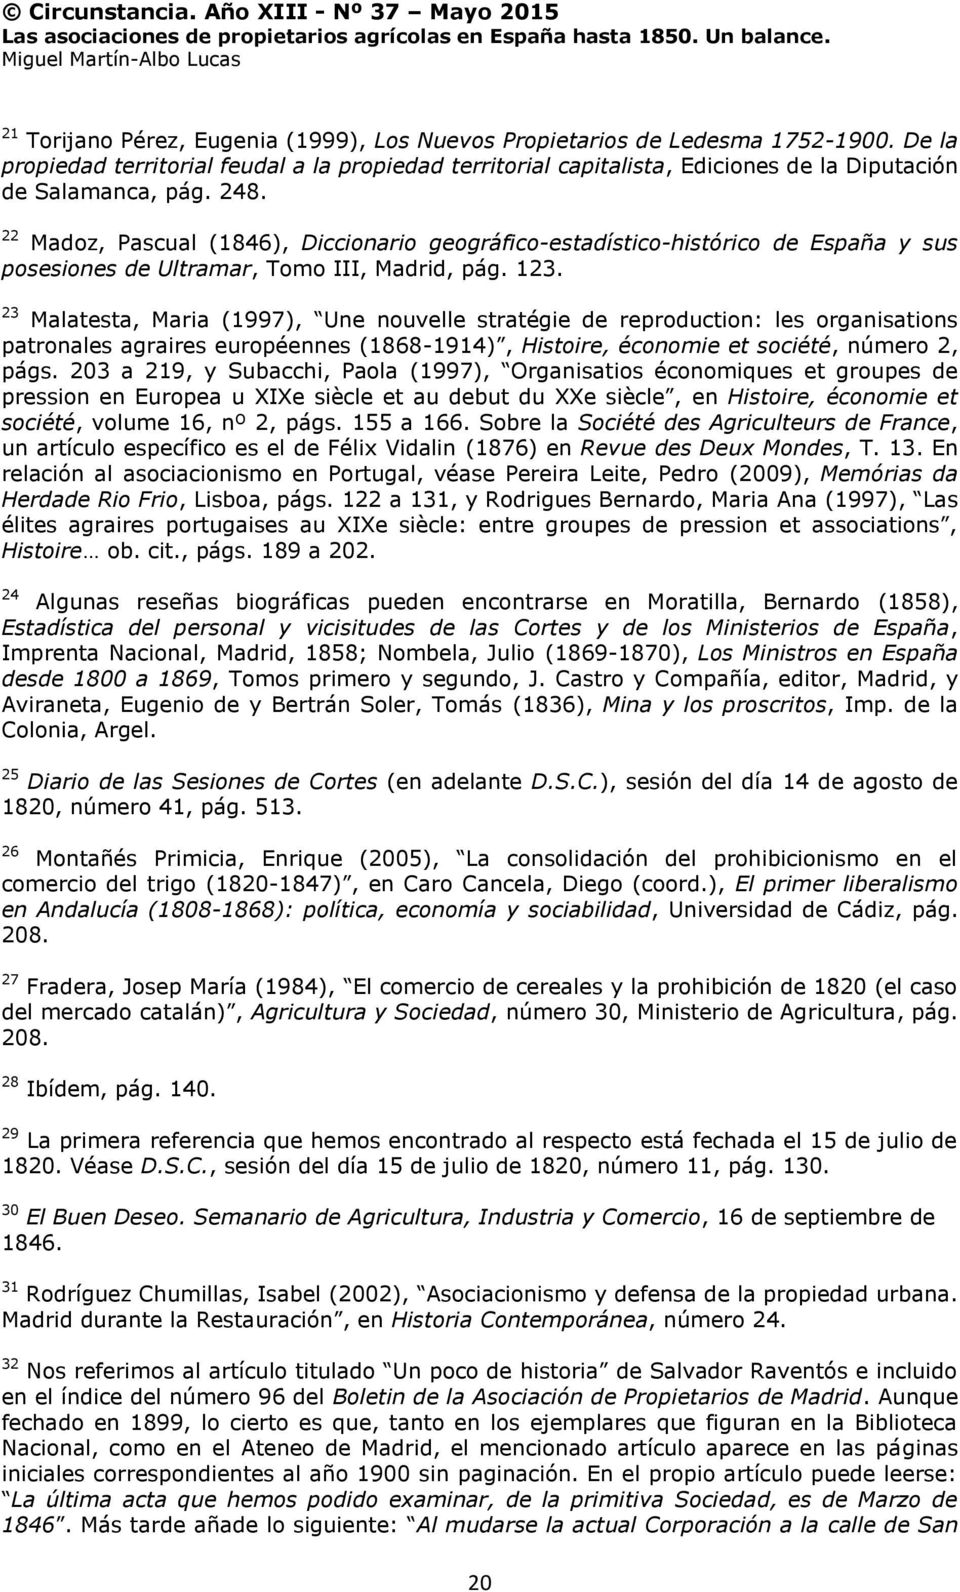 22 Madoz, Pascual (1846), Diccionario geográfico-estadístico-histórico de España y sus posesiones de Ultramar, Tomo III, Madrid, pág. 123.